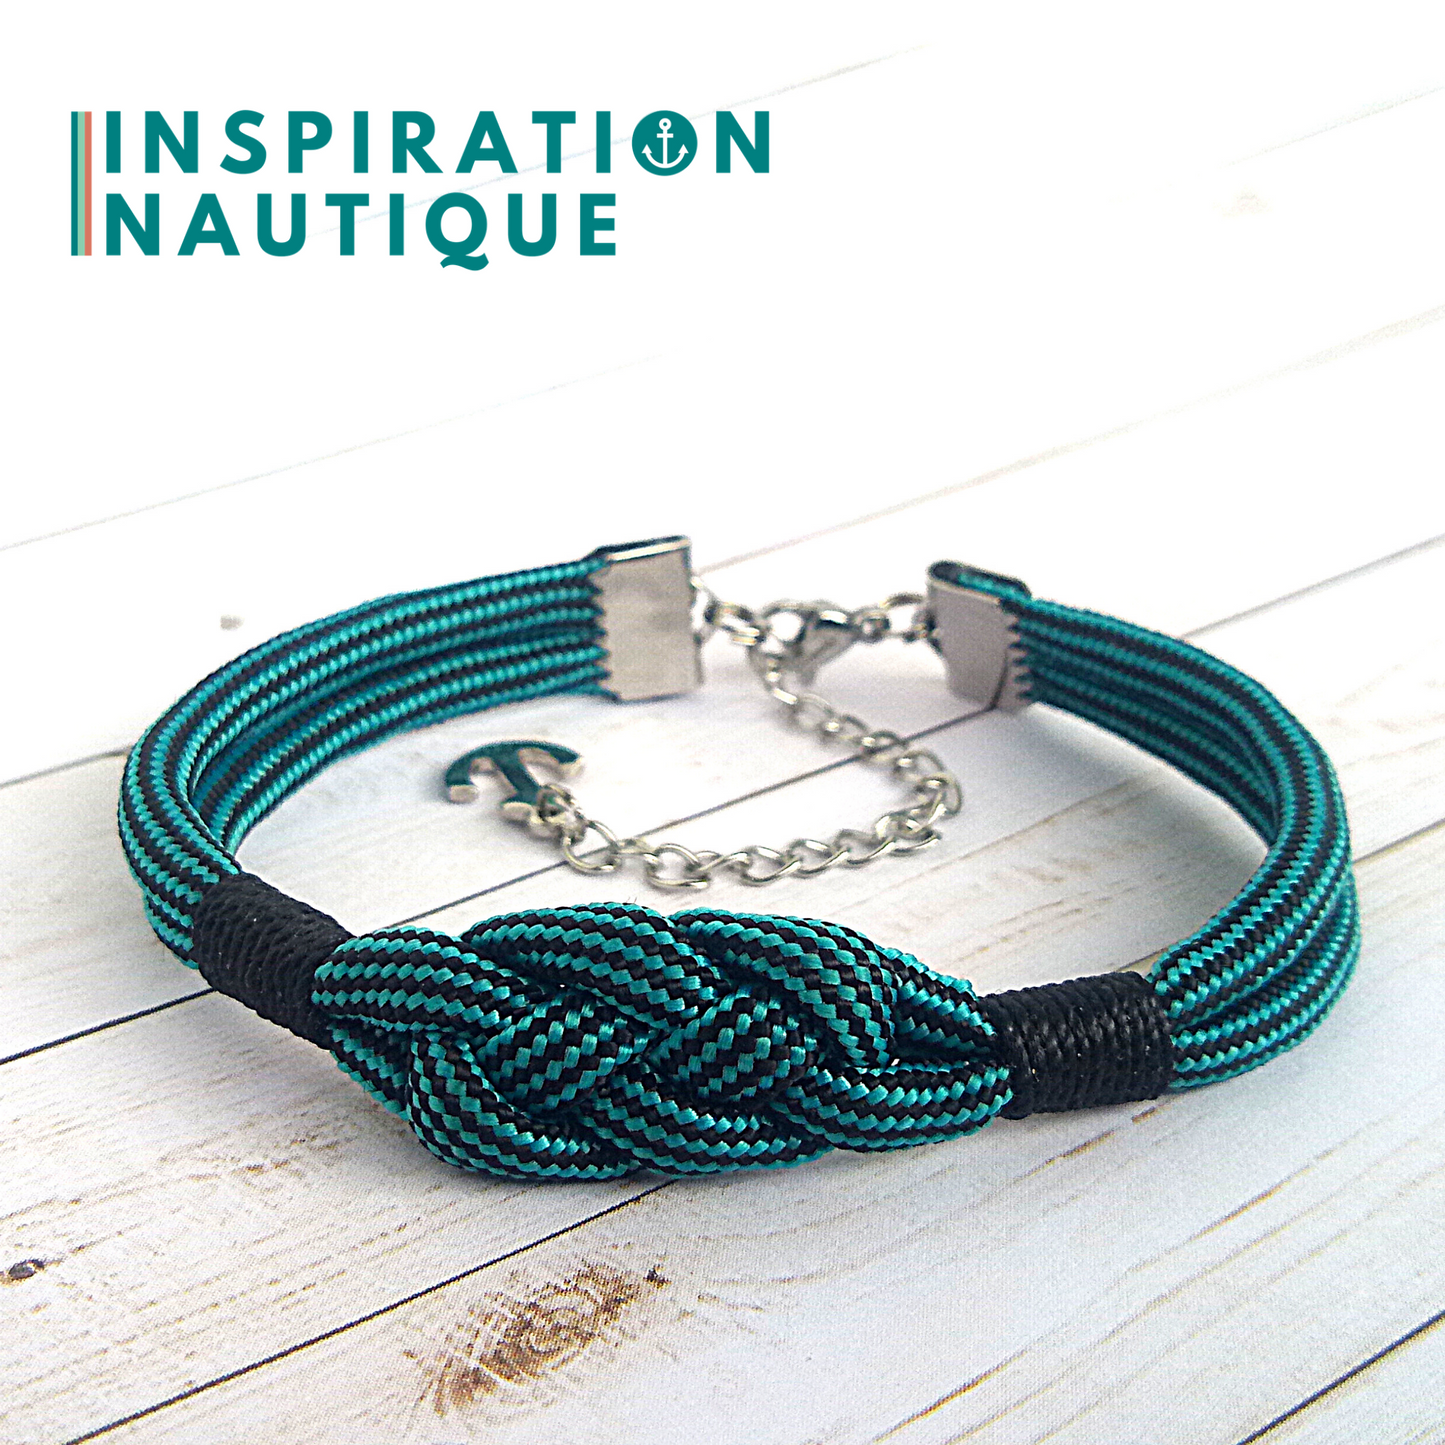 Bracelet marin avec noeud de carrick simple, en paracorde 550 et acier inoxydable, Turquoise et noir, ligné, surliure noire, Medium